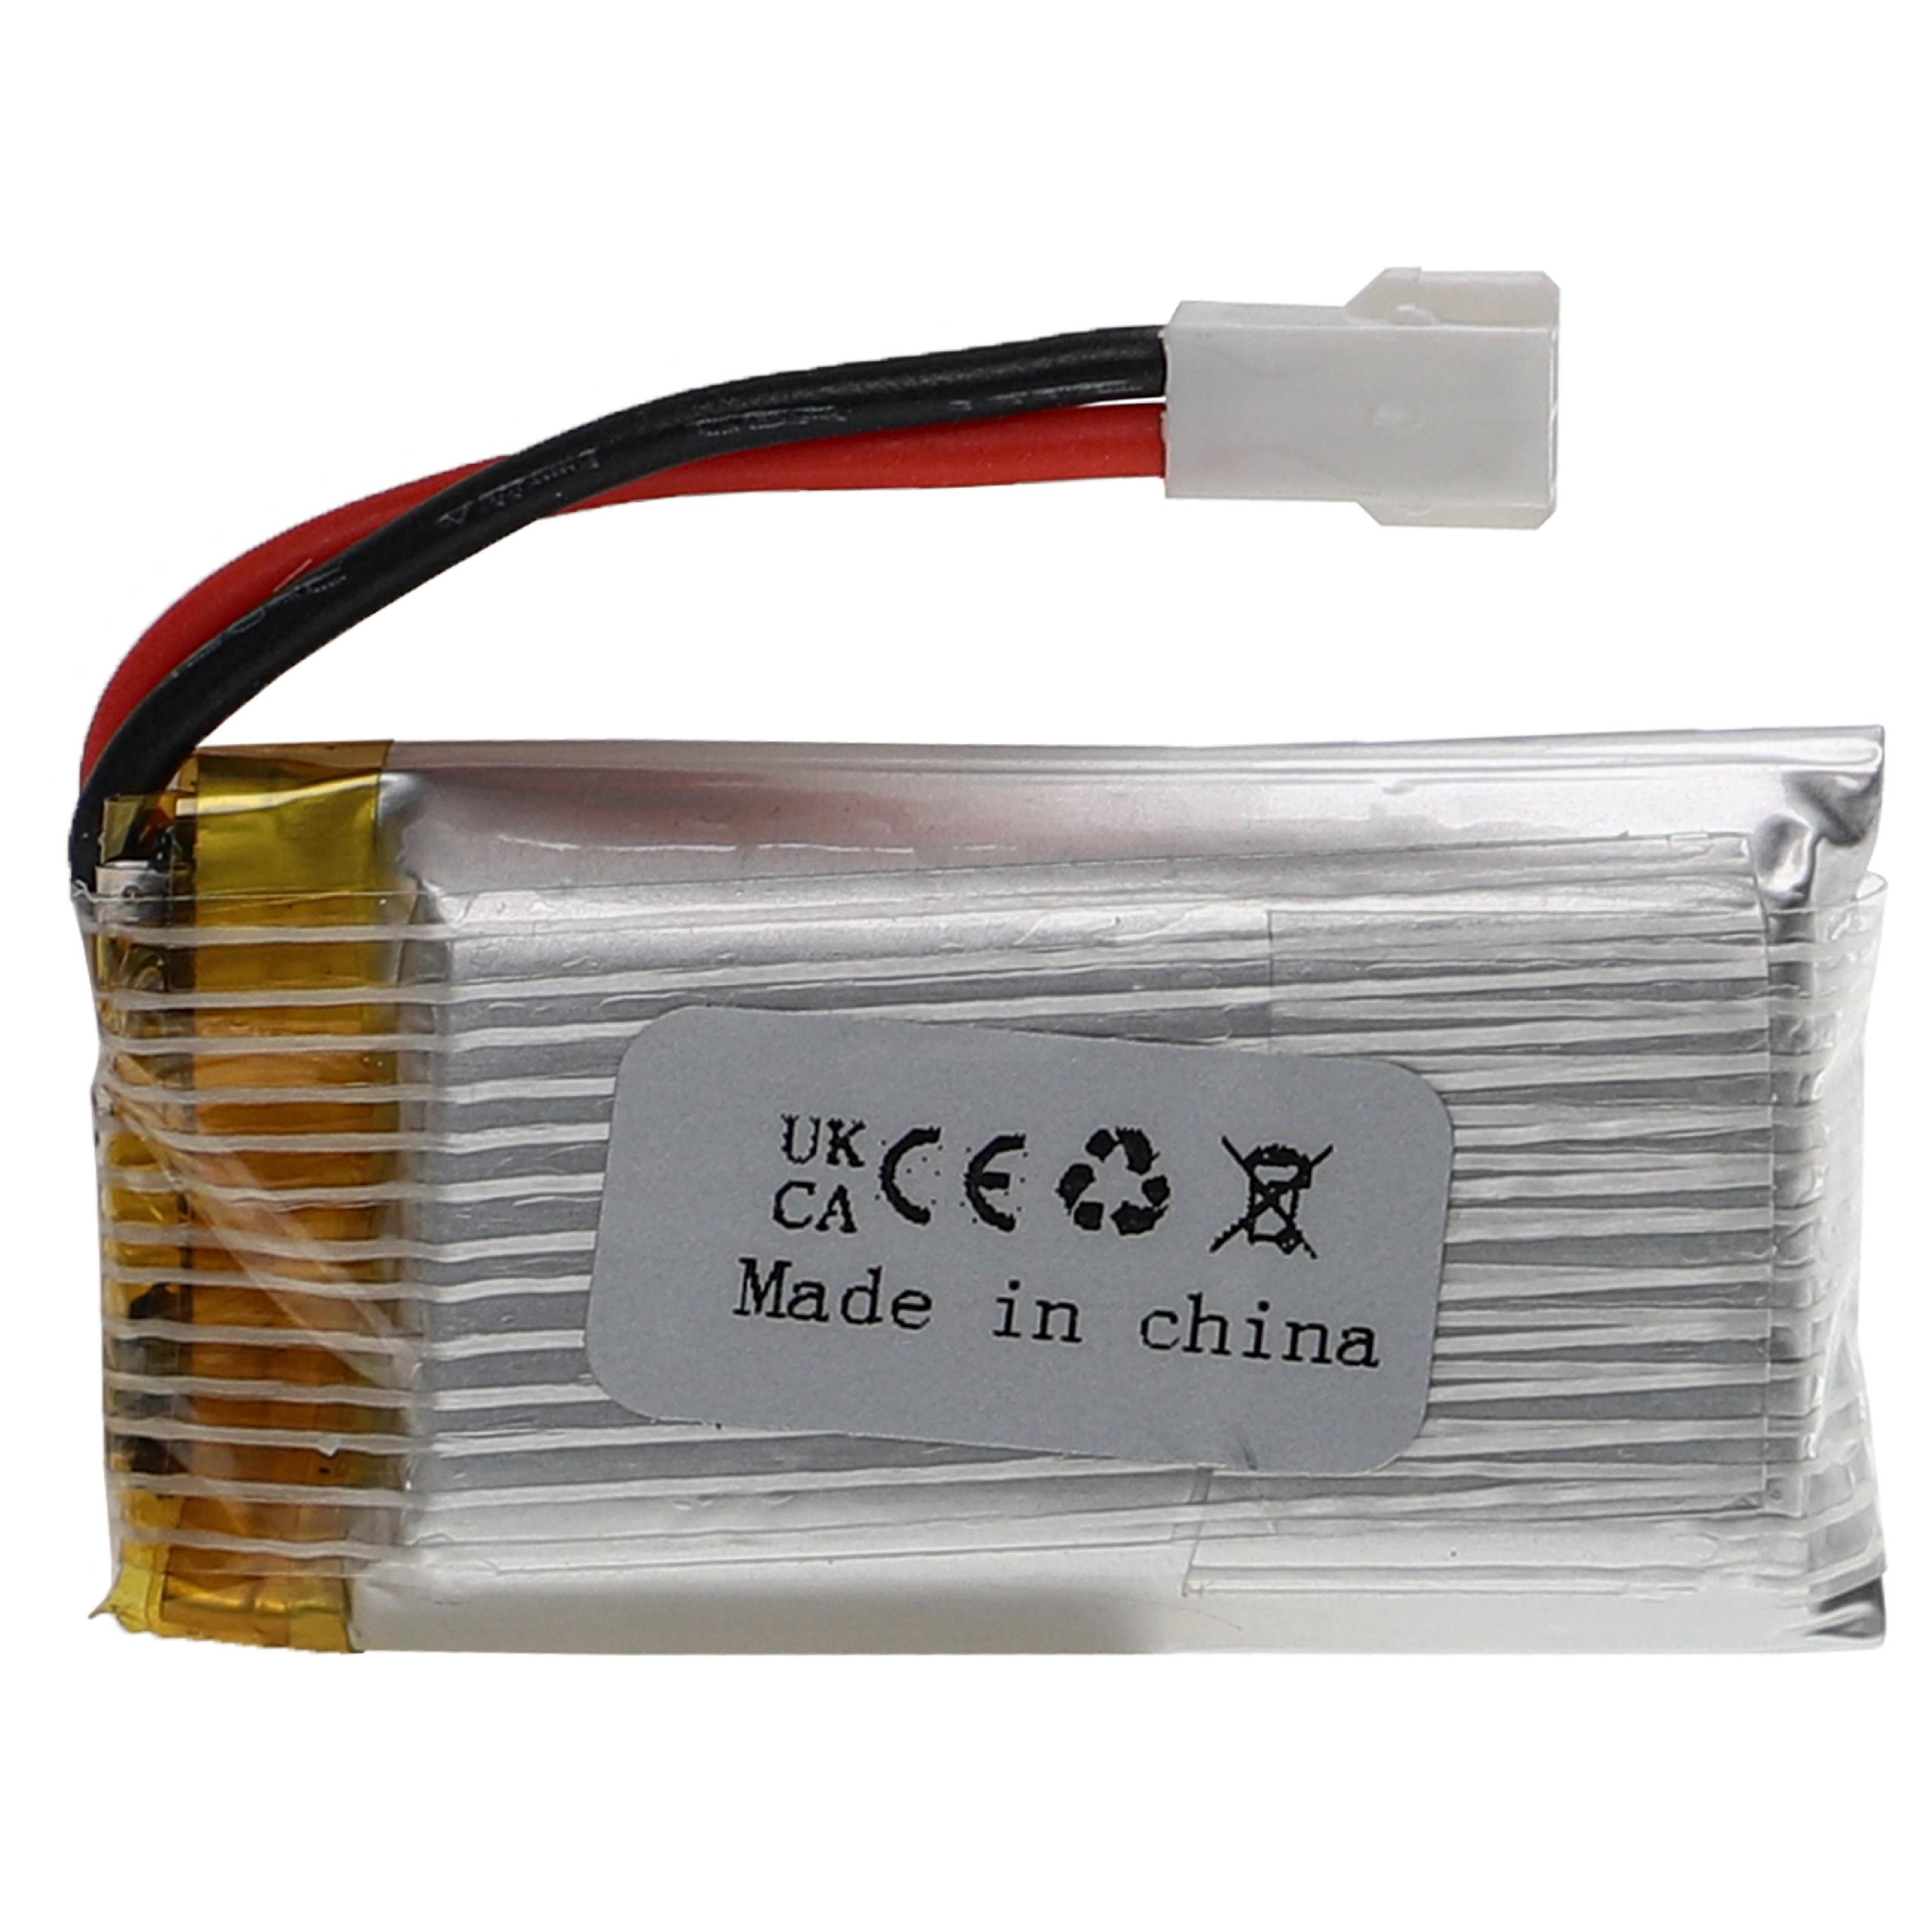 Batterie pour modèle radio-télécommandé - 550mAh 3,7V Li-polymère, XH 2.54 2P